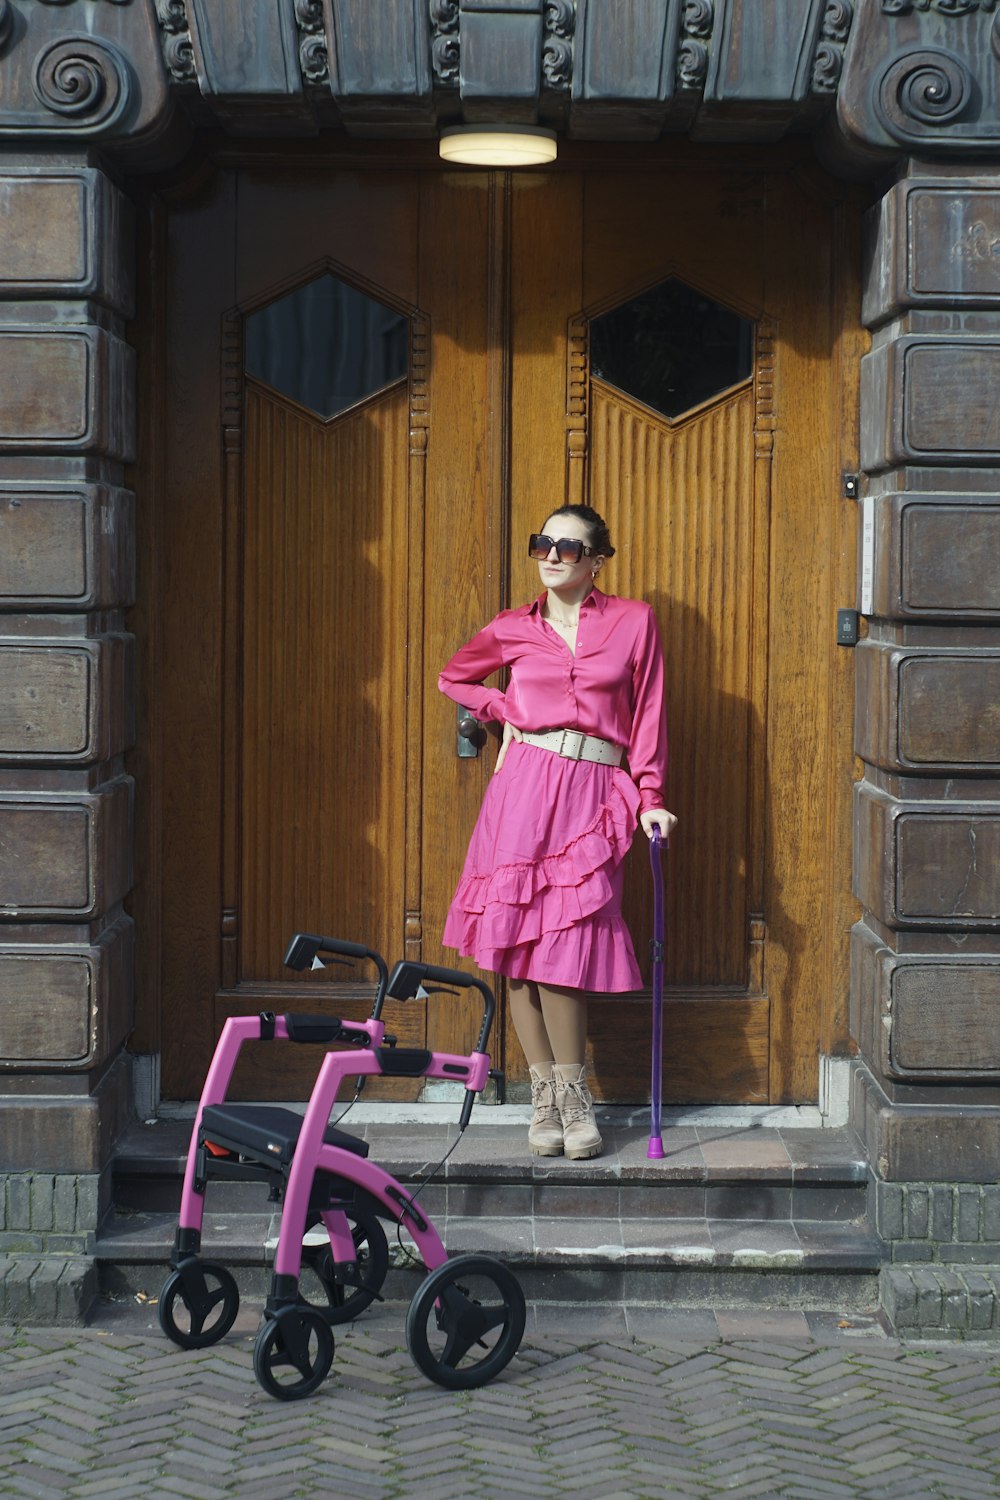 ピンクのワンピースを着た女性がベビーカーを持って立っている